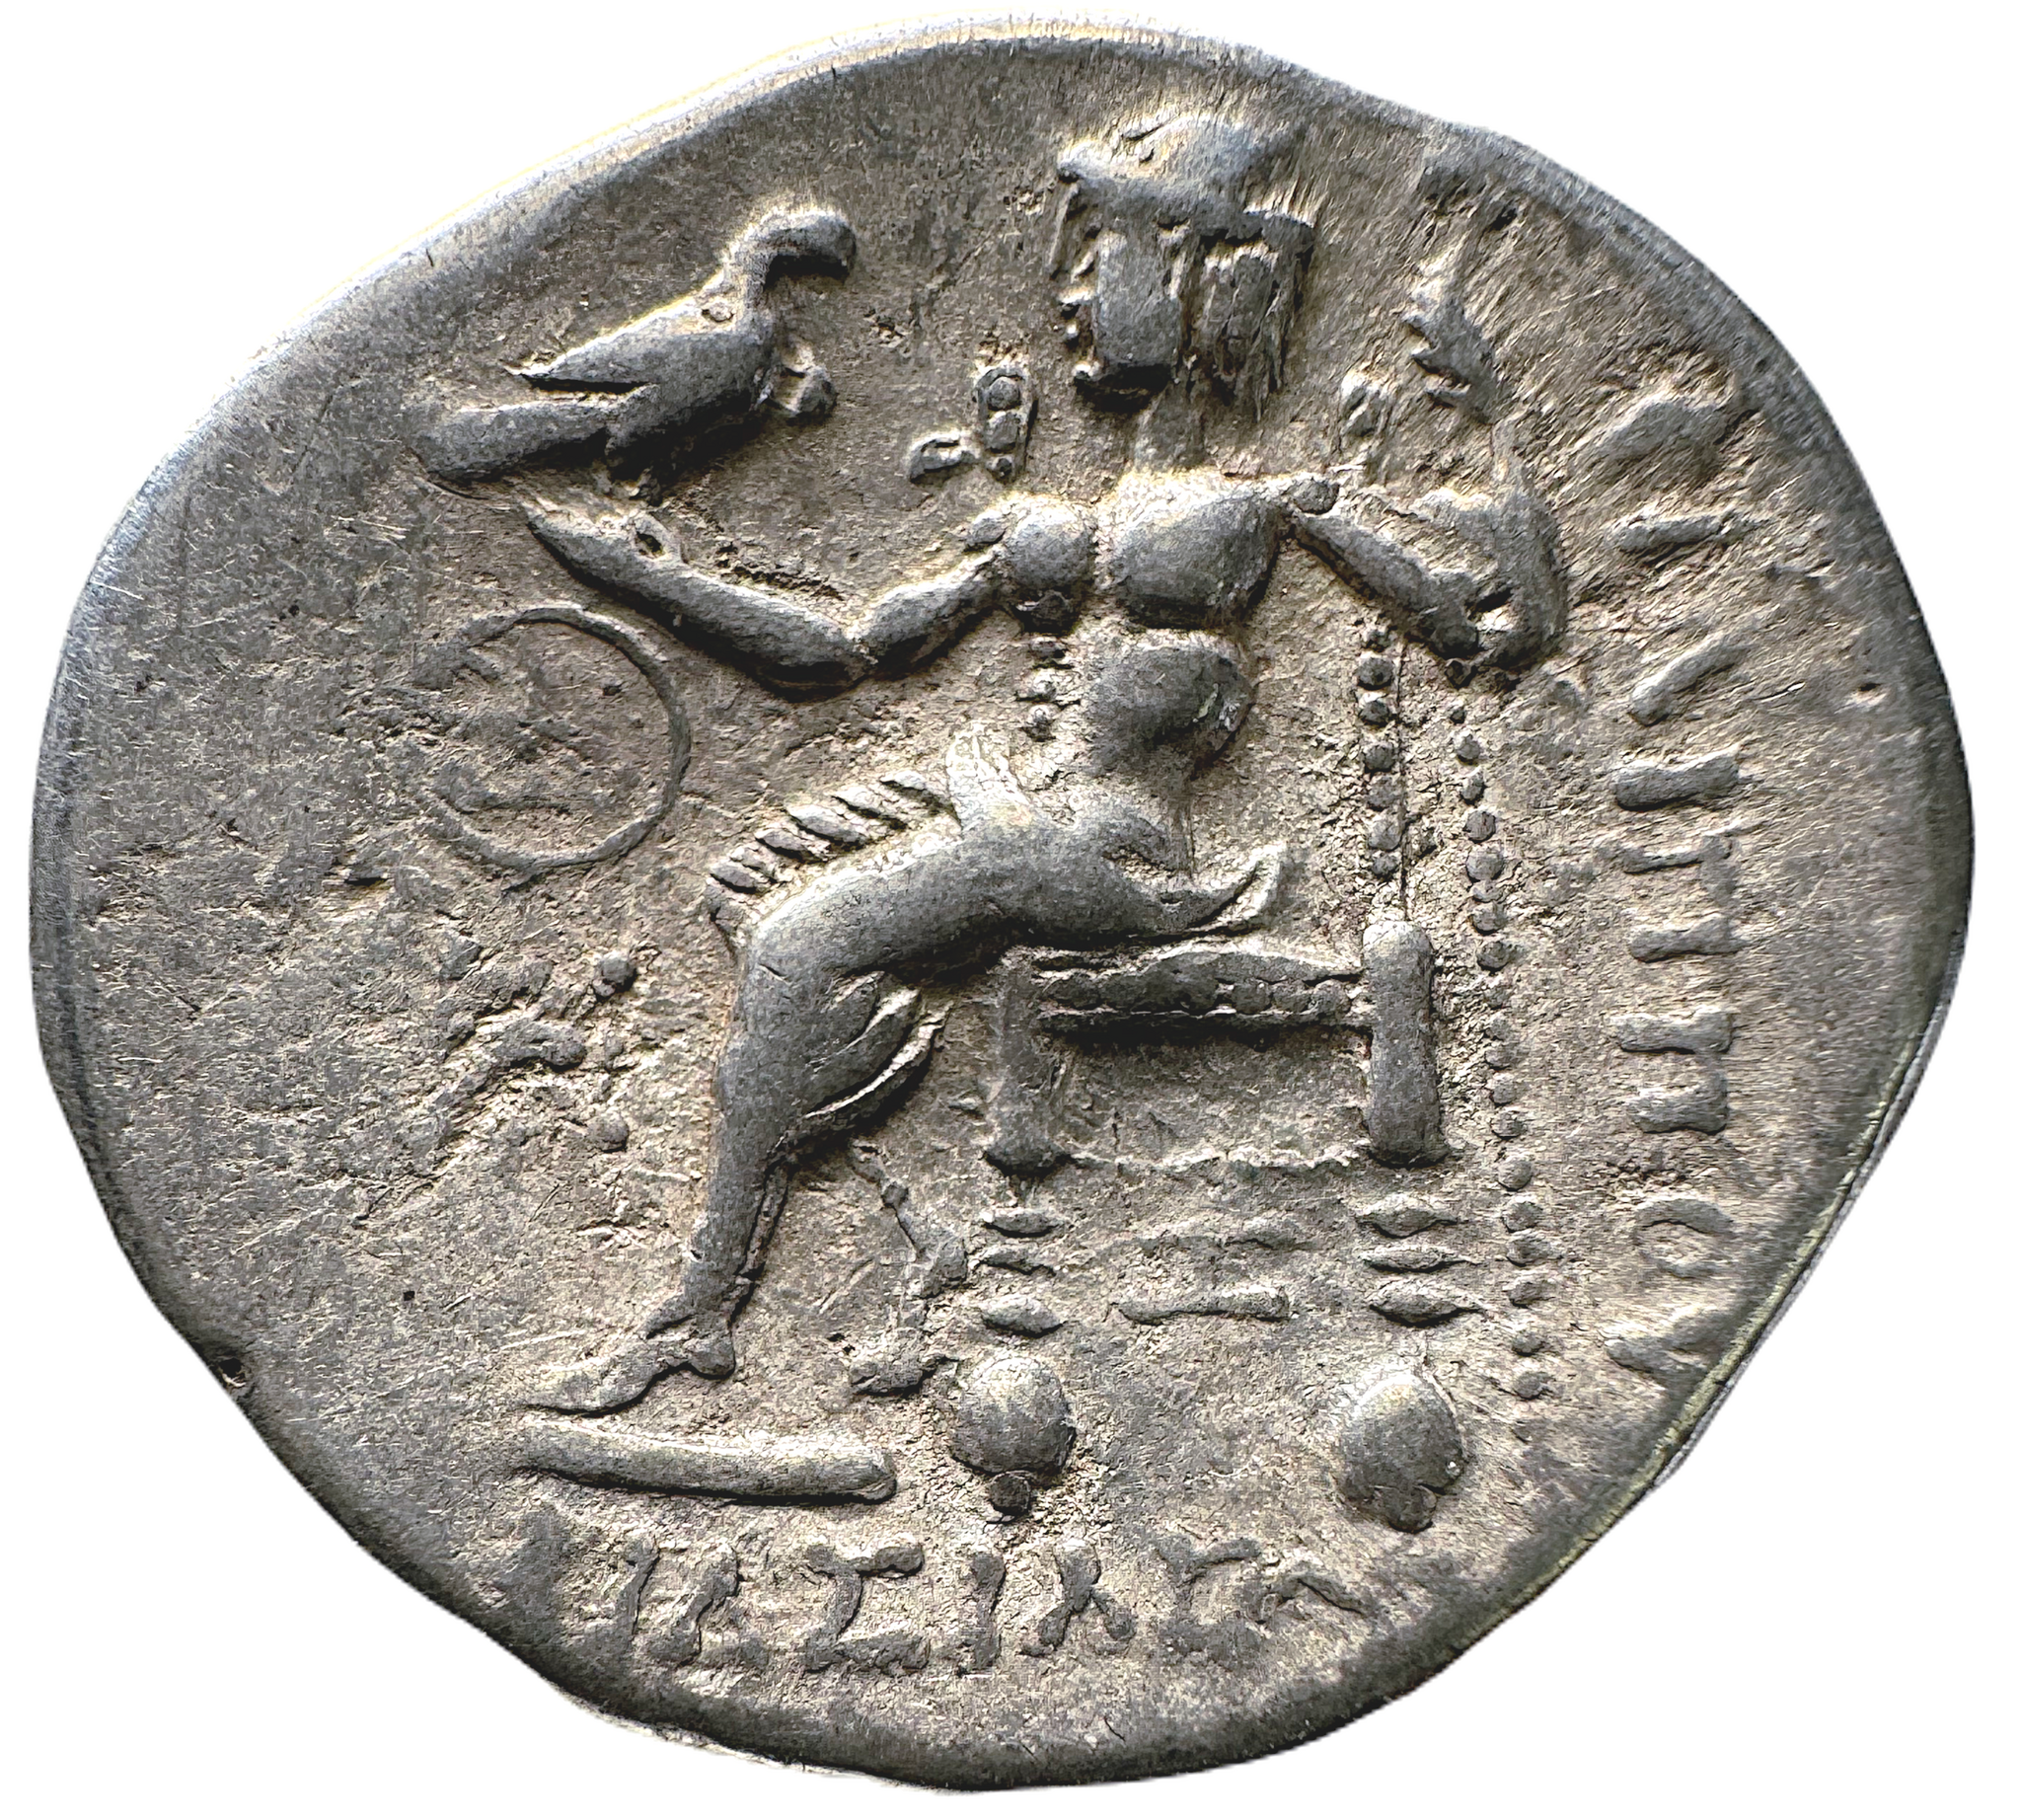 Makedonien. Tetradrachm med utseende som Alexander den Store, men präglad under efterkommande kung, Philip III Arrhidaios, 323-317 f.Kr.